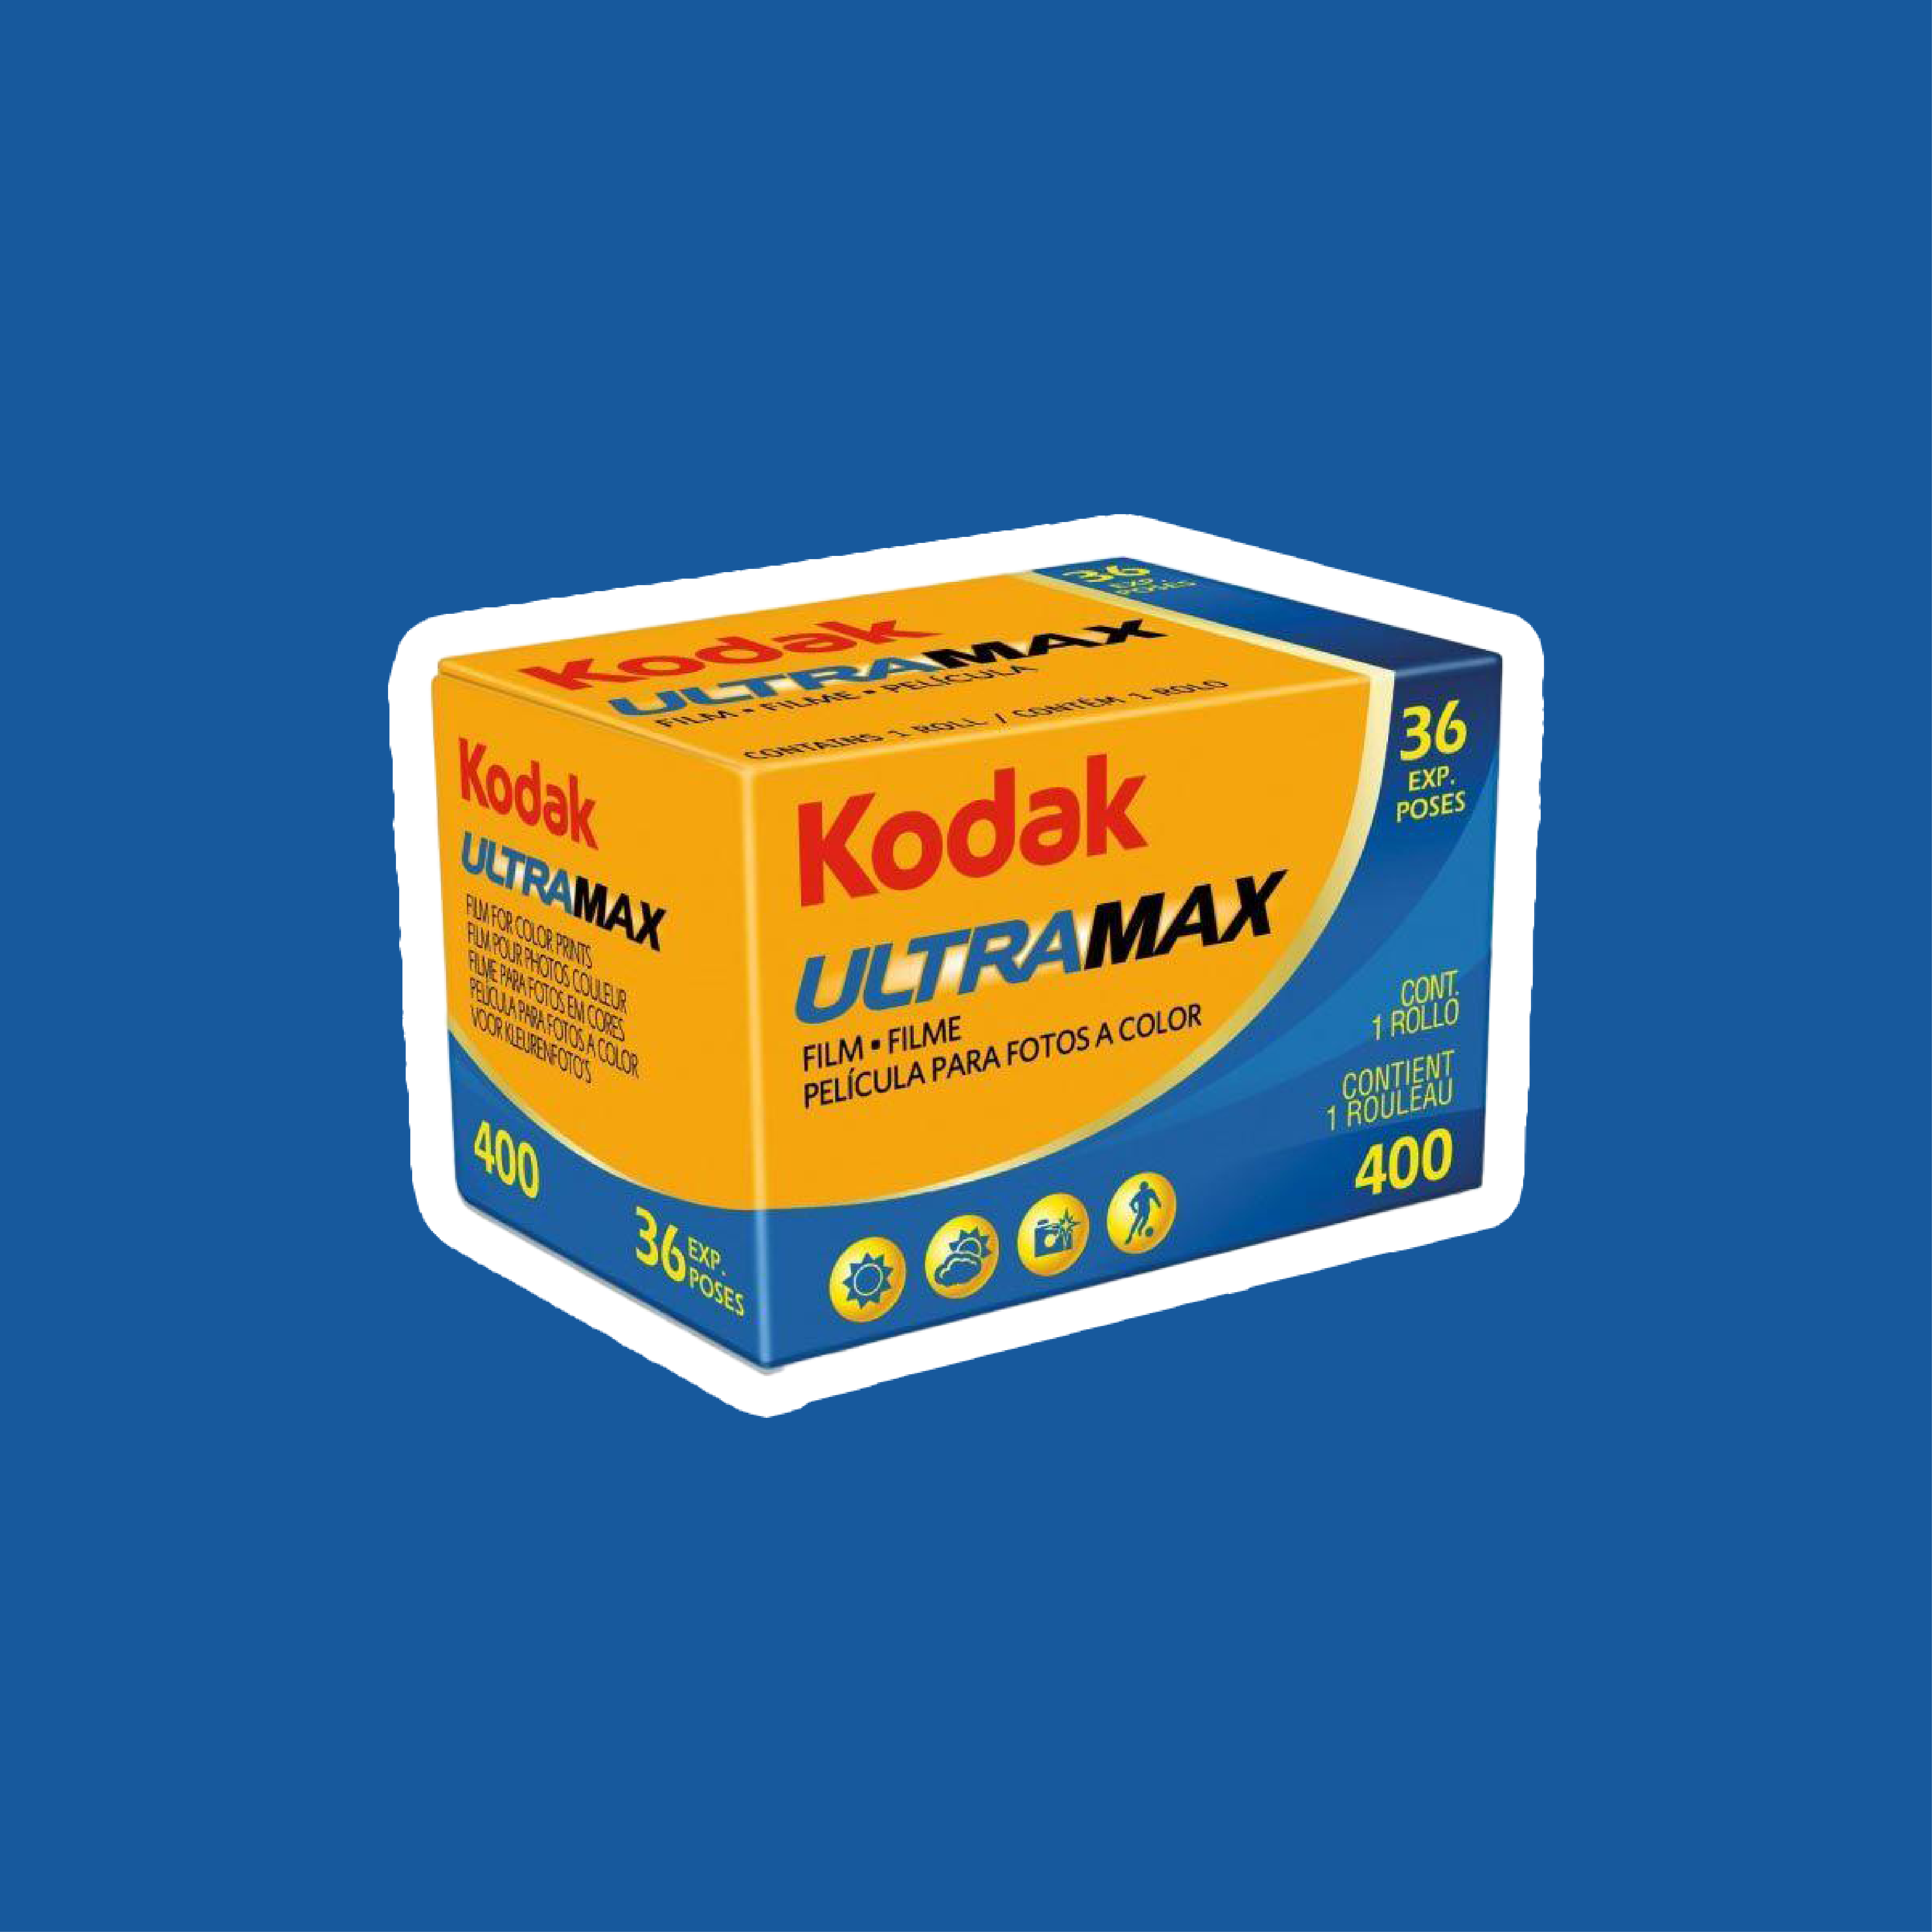 コダック Kodak UltraMAX400 135 35mmタイプ 36枚撮り